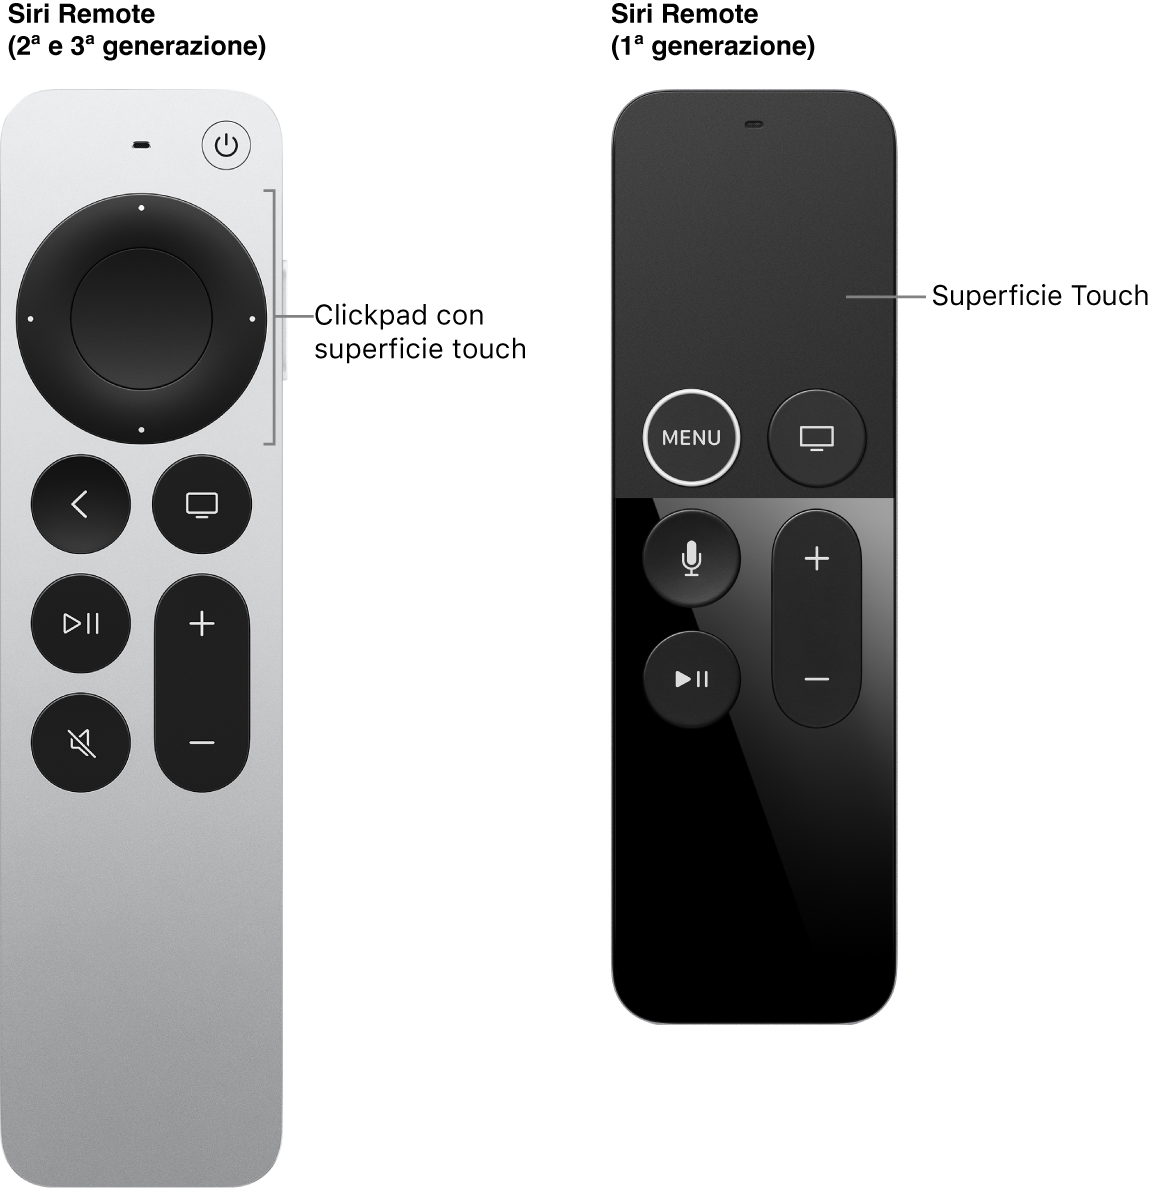 Siri Remote (seconda e terza generazione) con clickpad e Siri Remote (prima generazione) con superficie Touch.